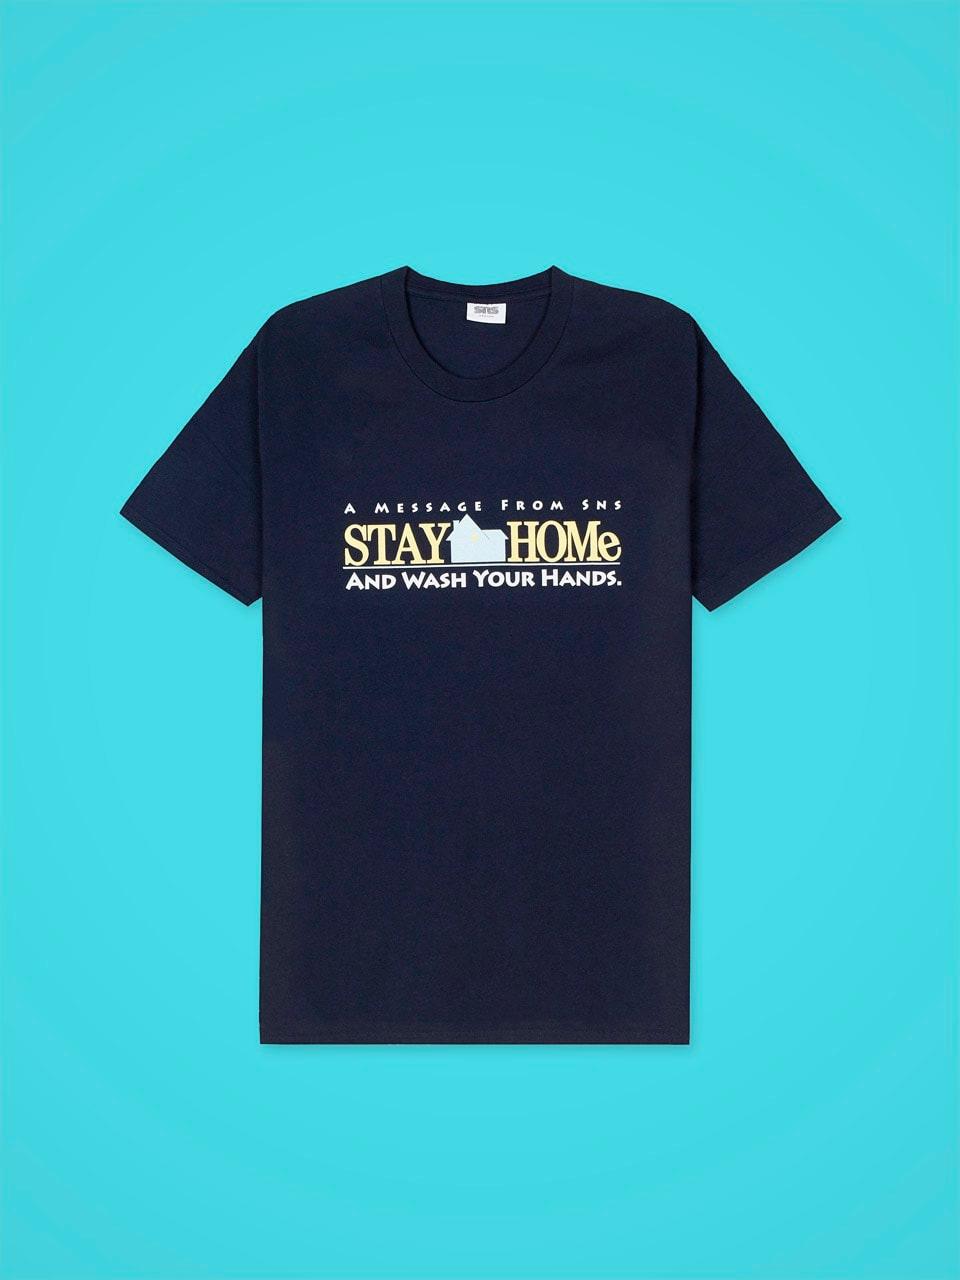 ネットで買える、最旬Tシャツ85。支援の意思を表明しよう 【チャリティー編】 - Slide:5